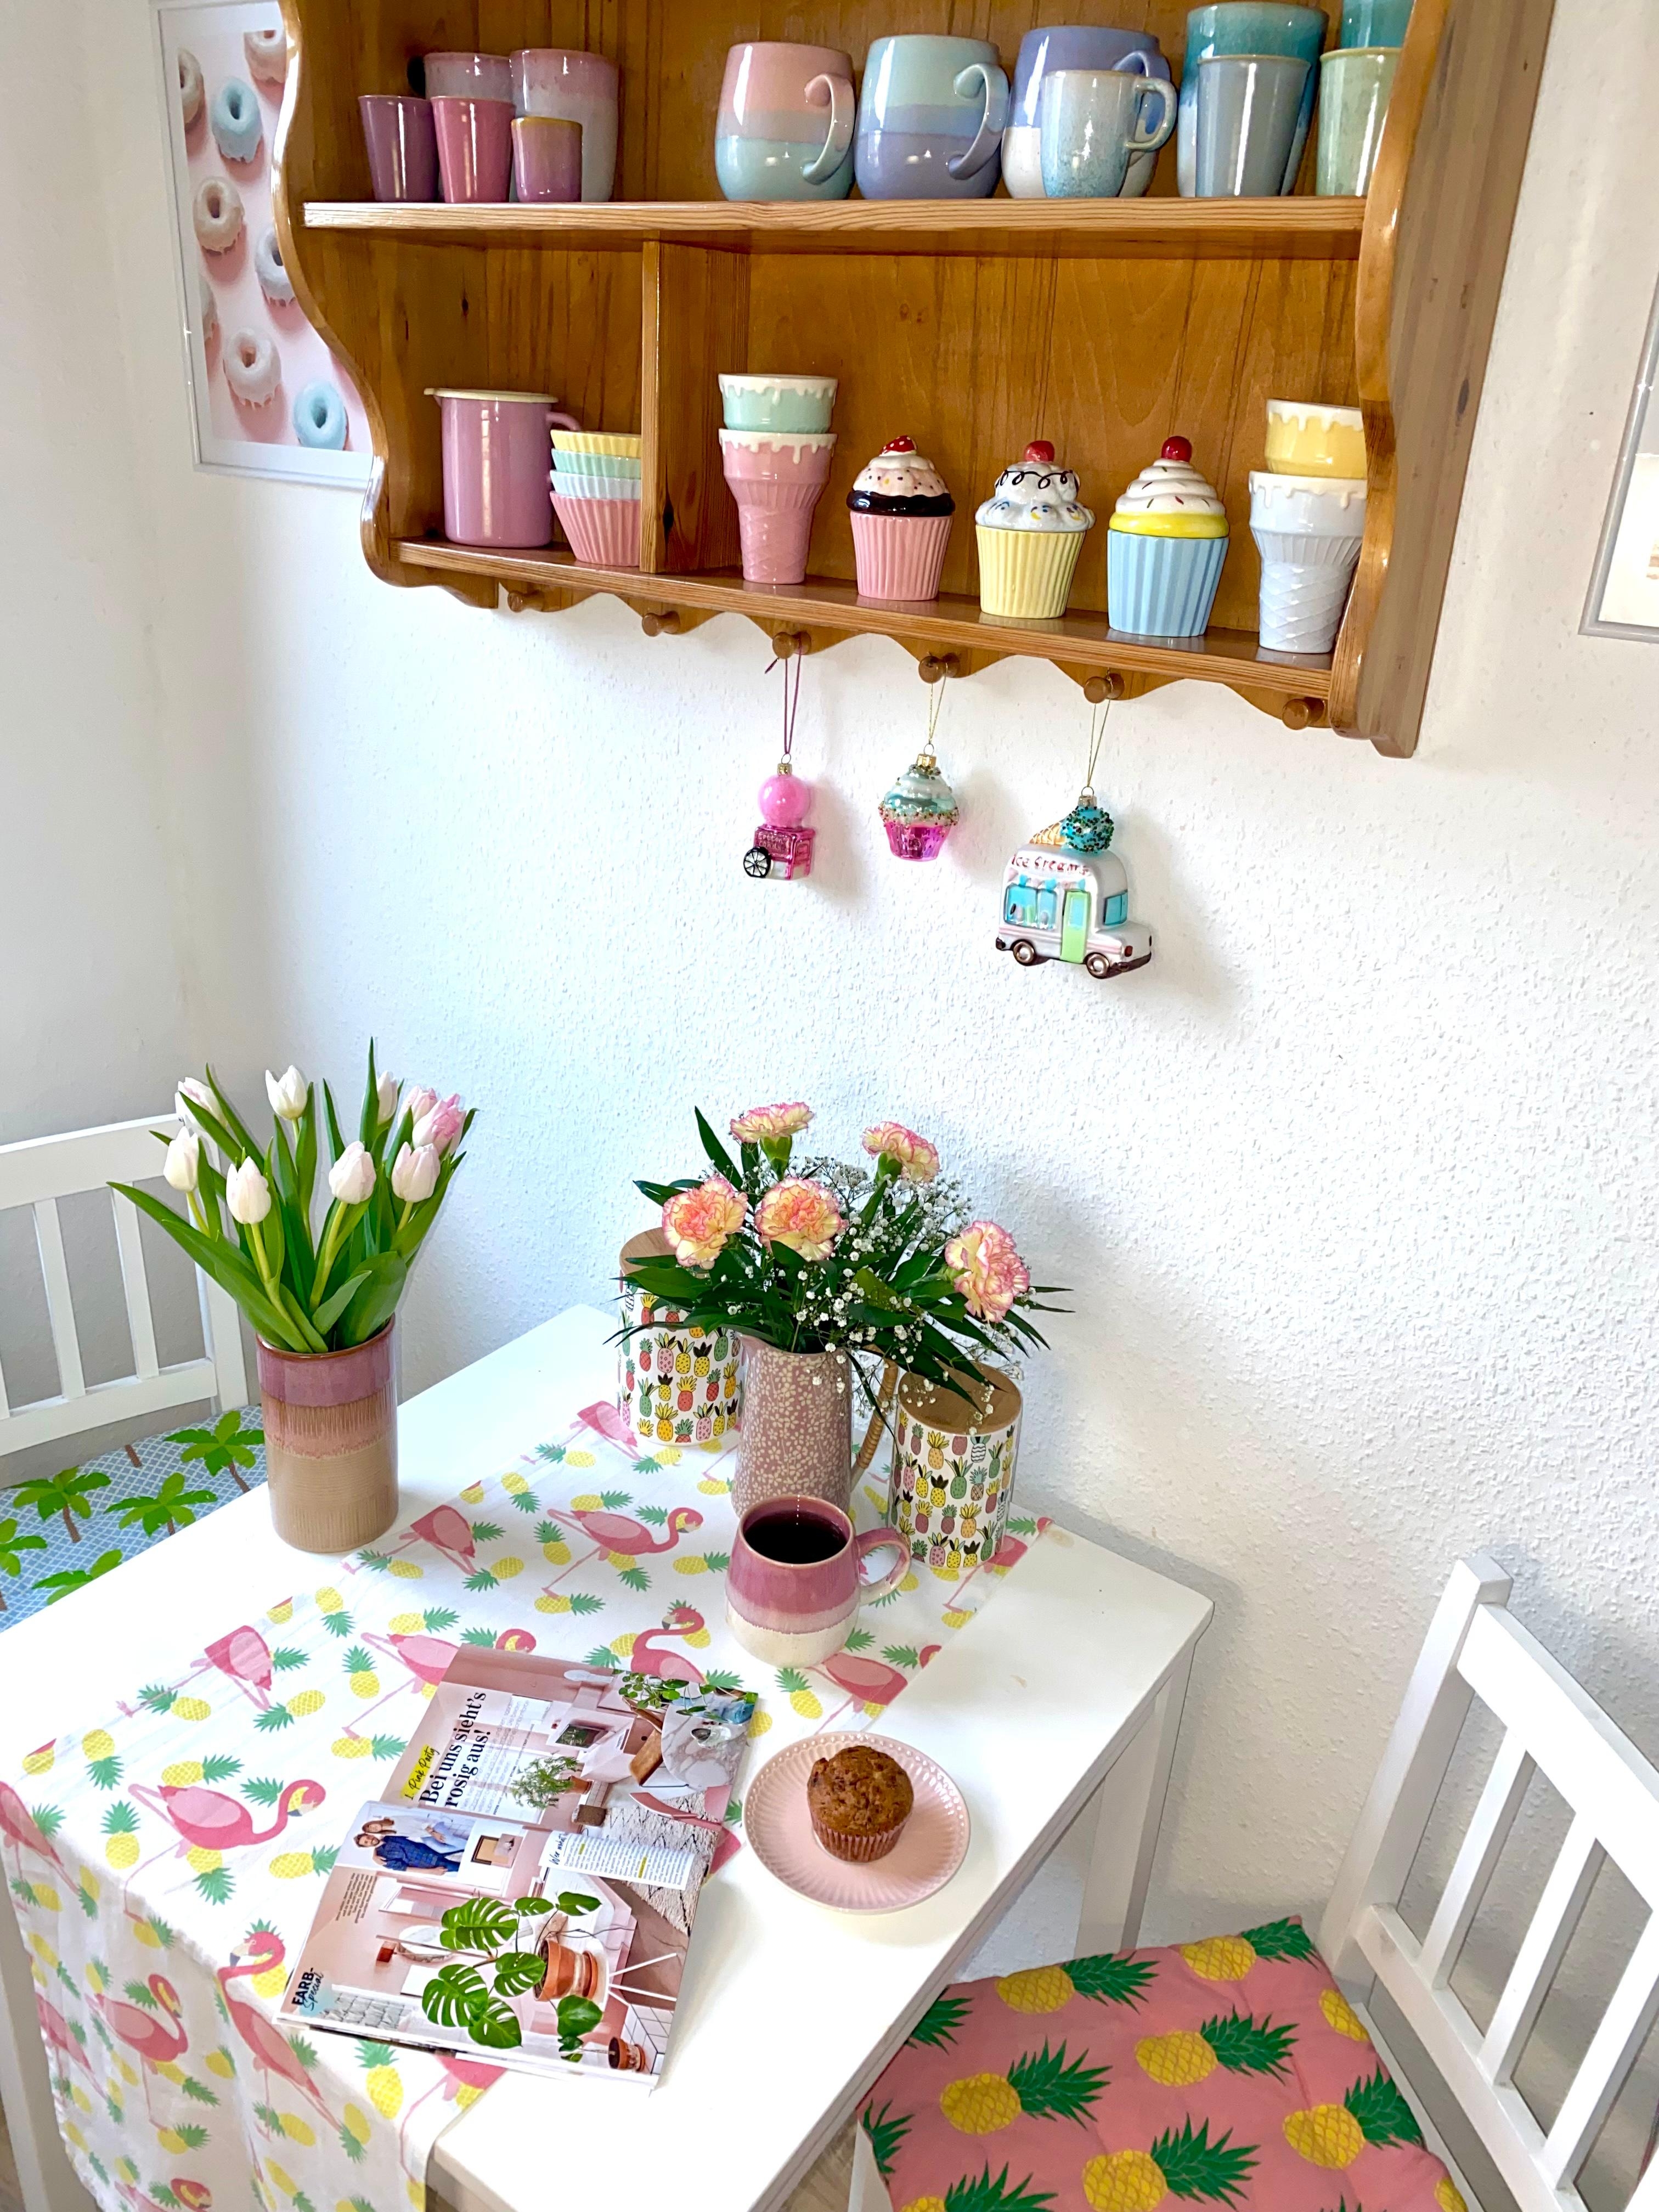 Guten Morgen! 

#candycolors #pastell #happyhome #küche #frischeblumen #tassenliebe #frühstück #bunt #deko 